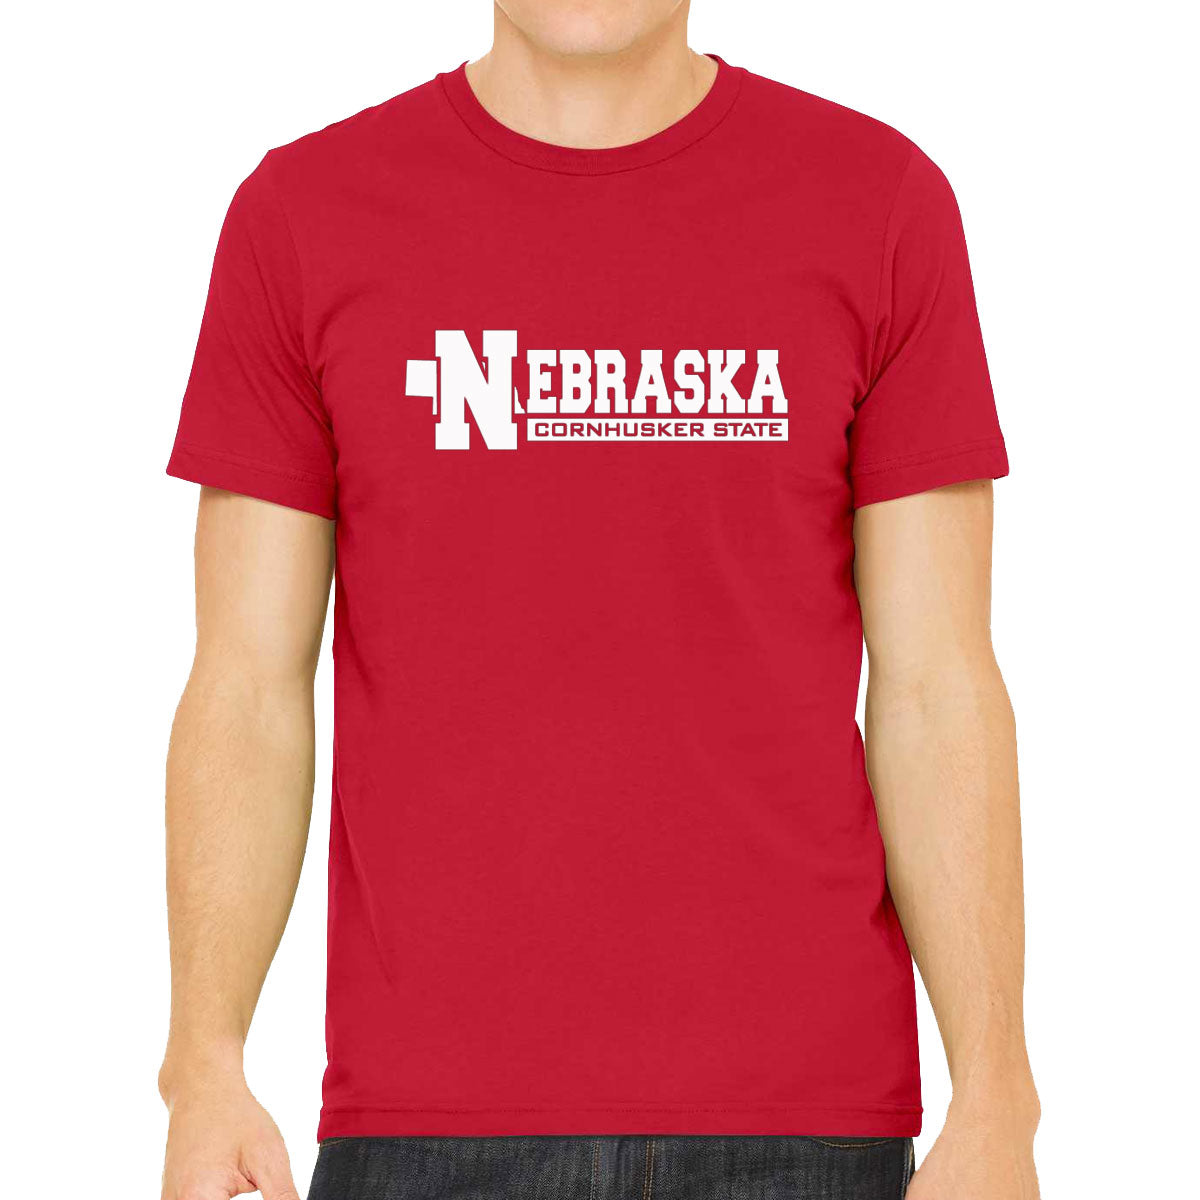 Nebraska Cornhusker State Men's T-shirt